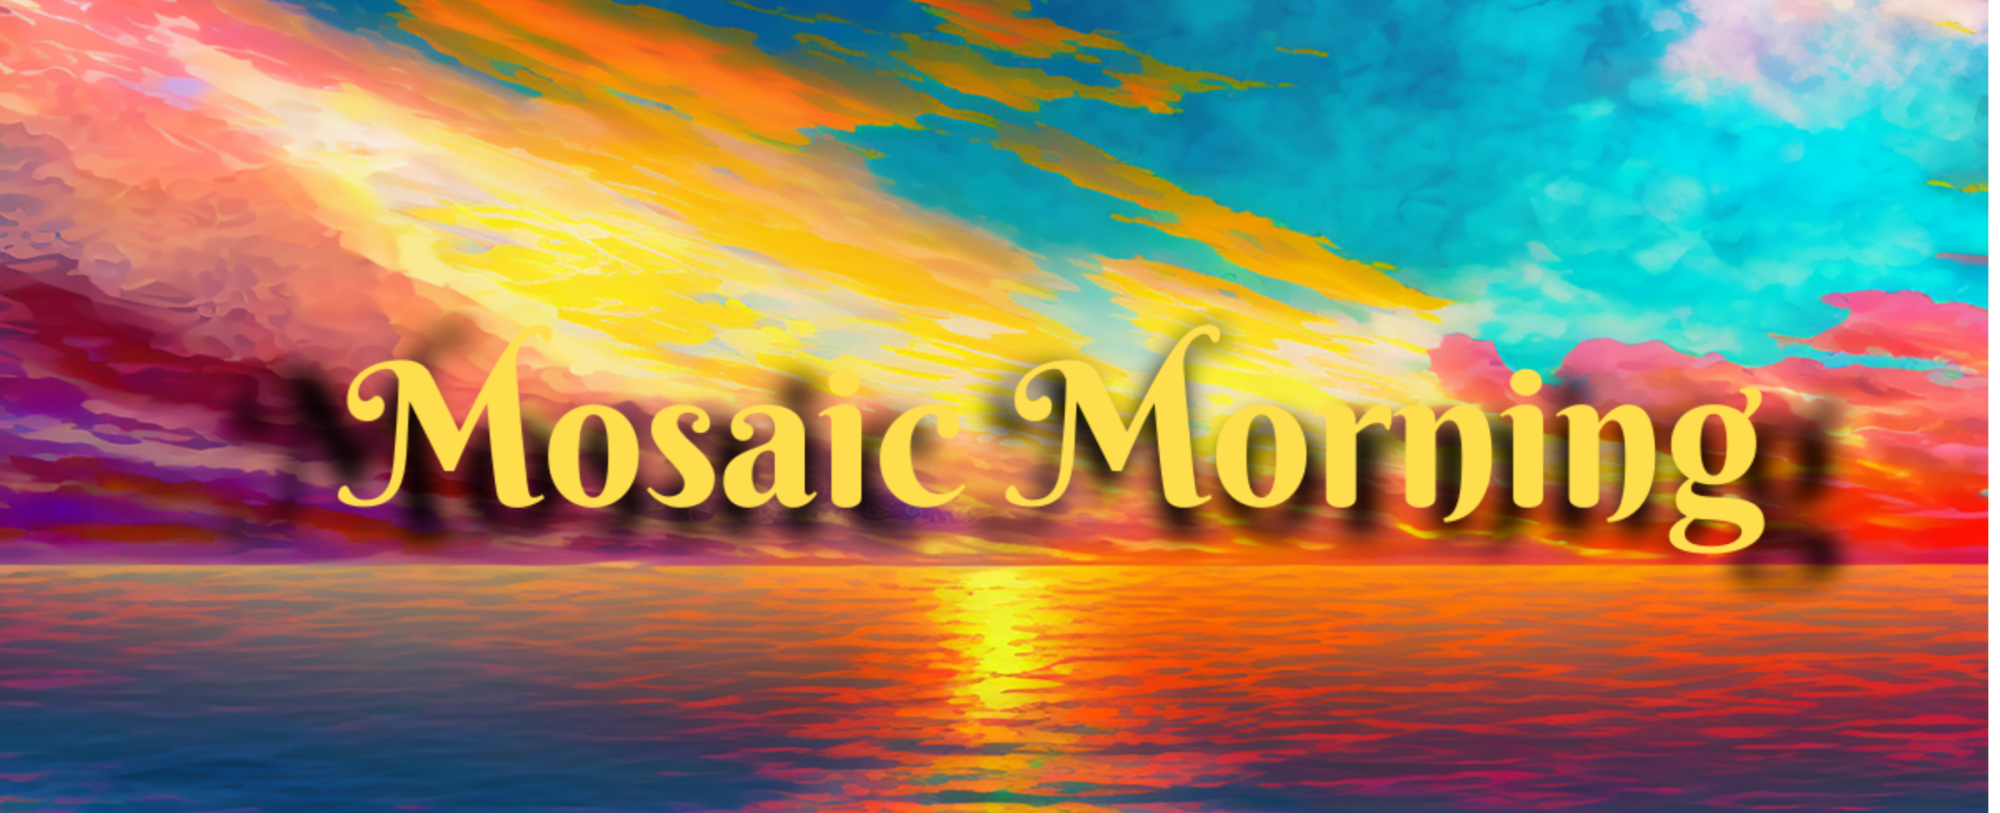 Mosaic Morning